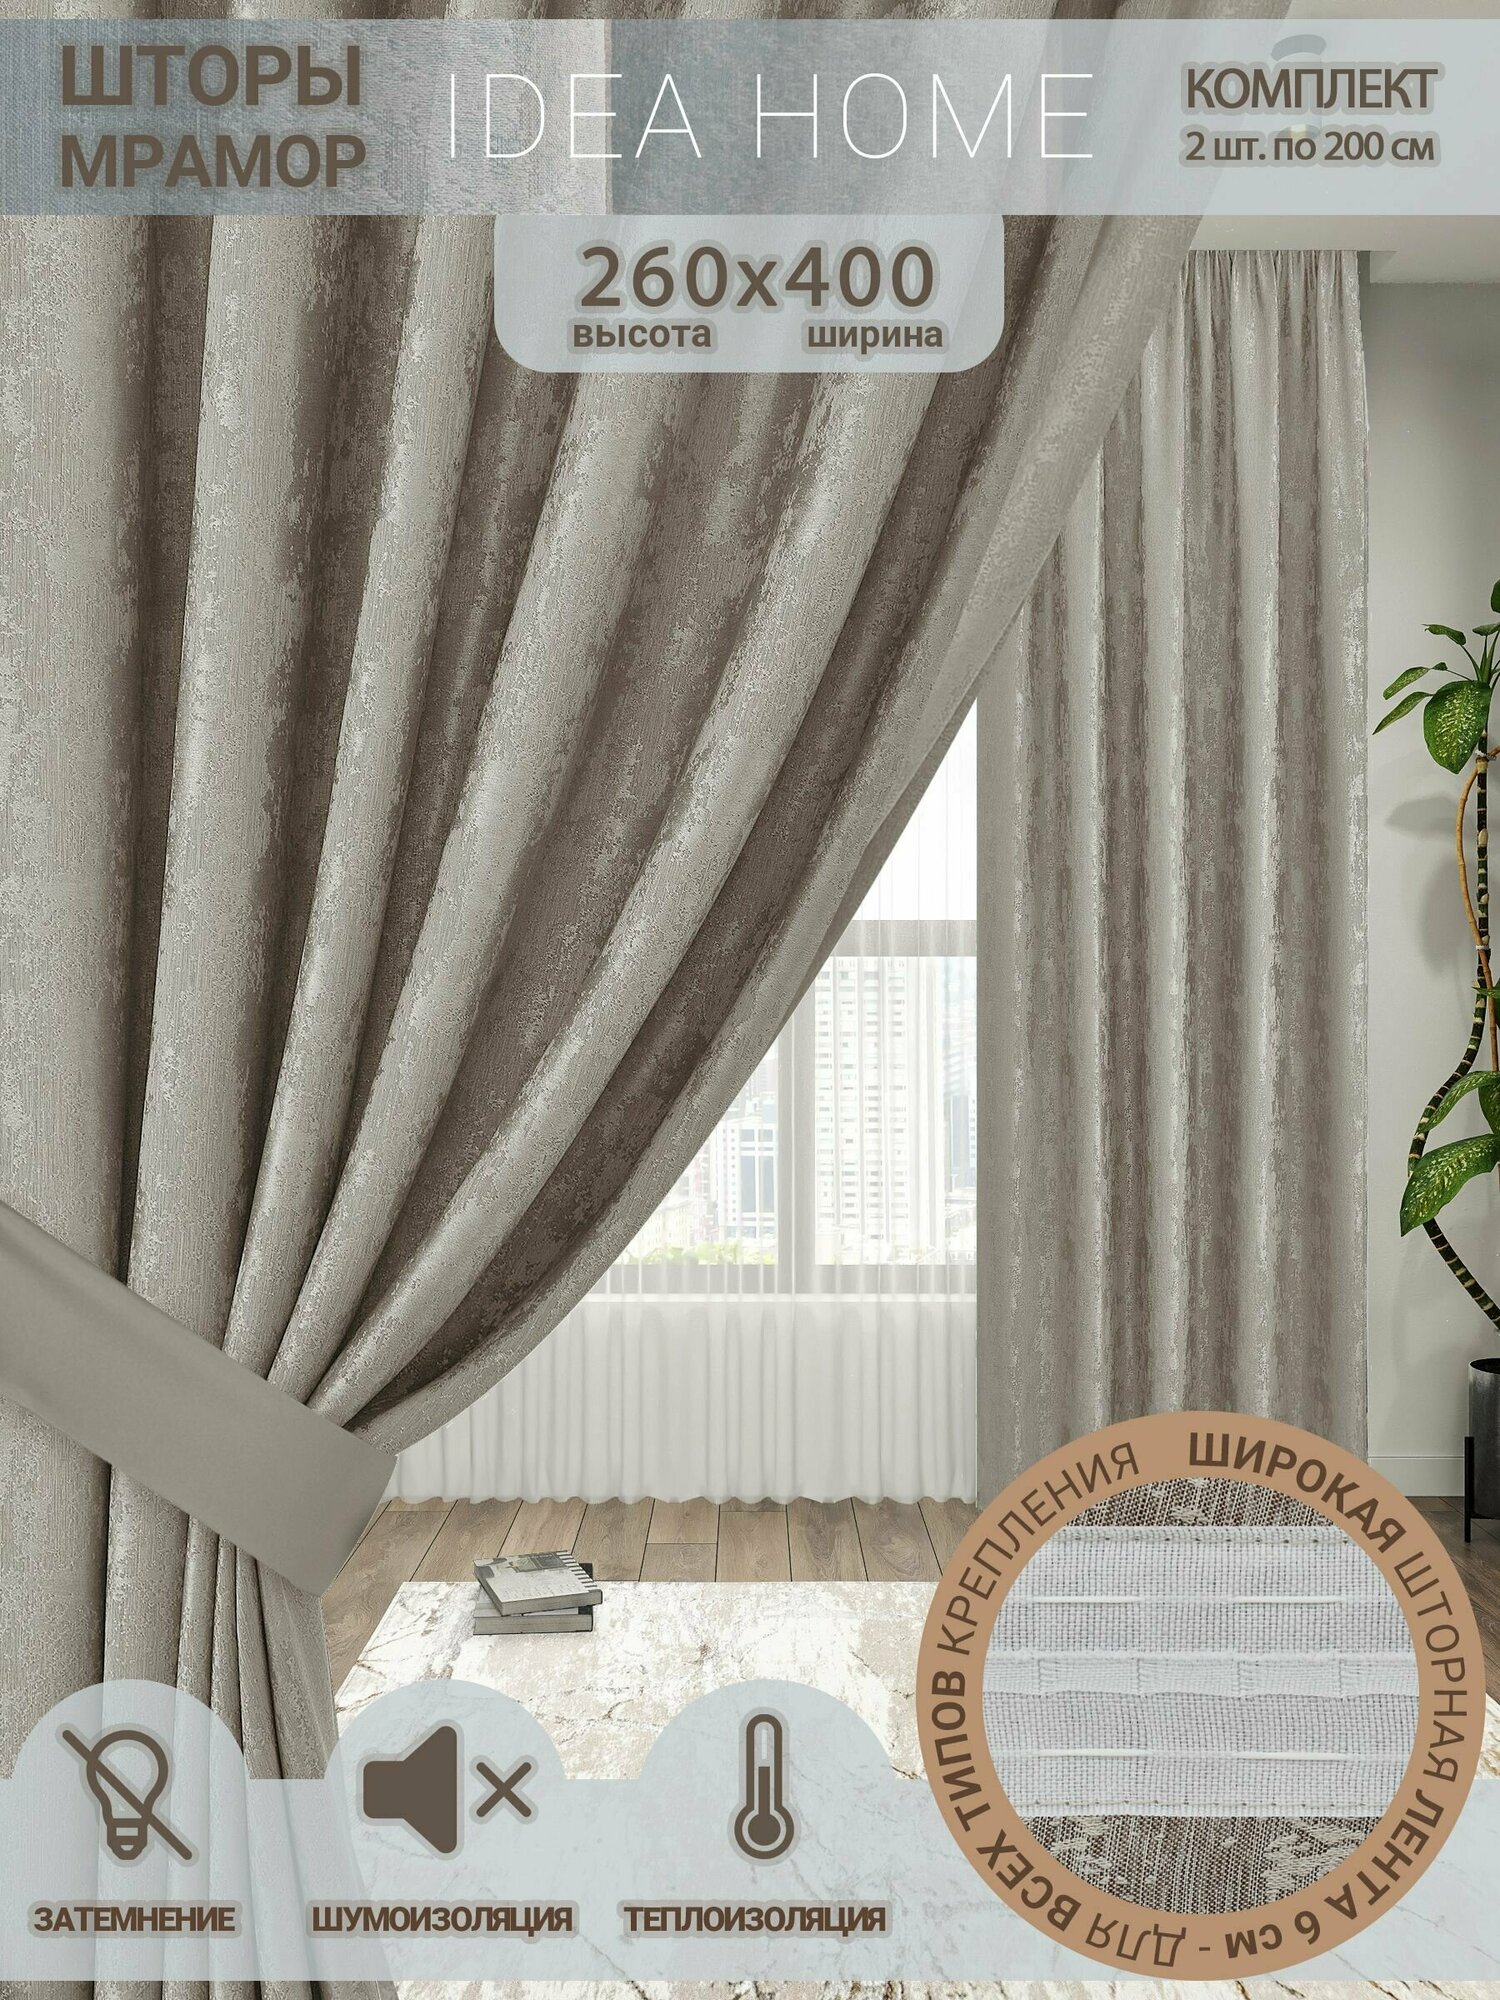 Комплект штор мрамор / IDEA HOME/ шторы для комнаты кухни спальни гостиной и дачи